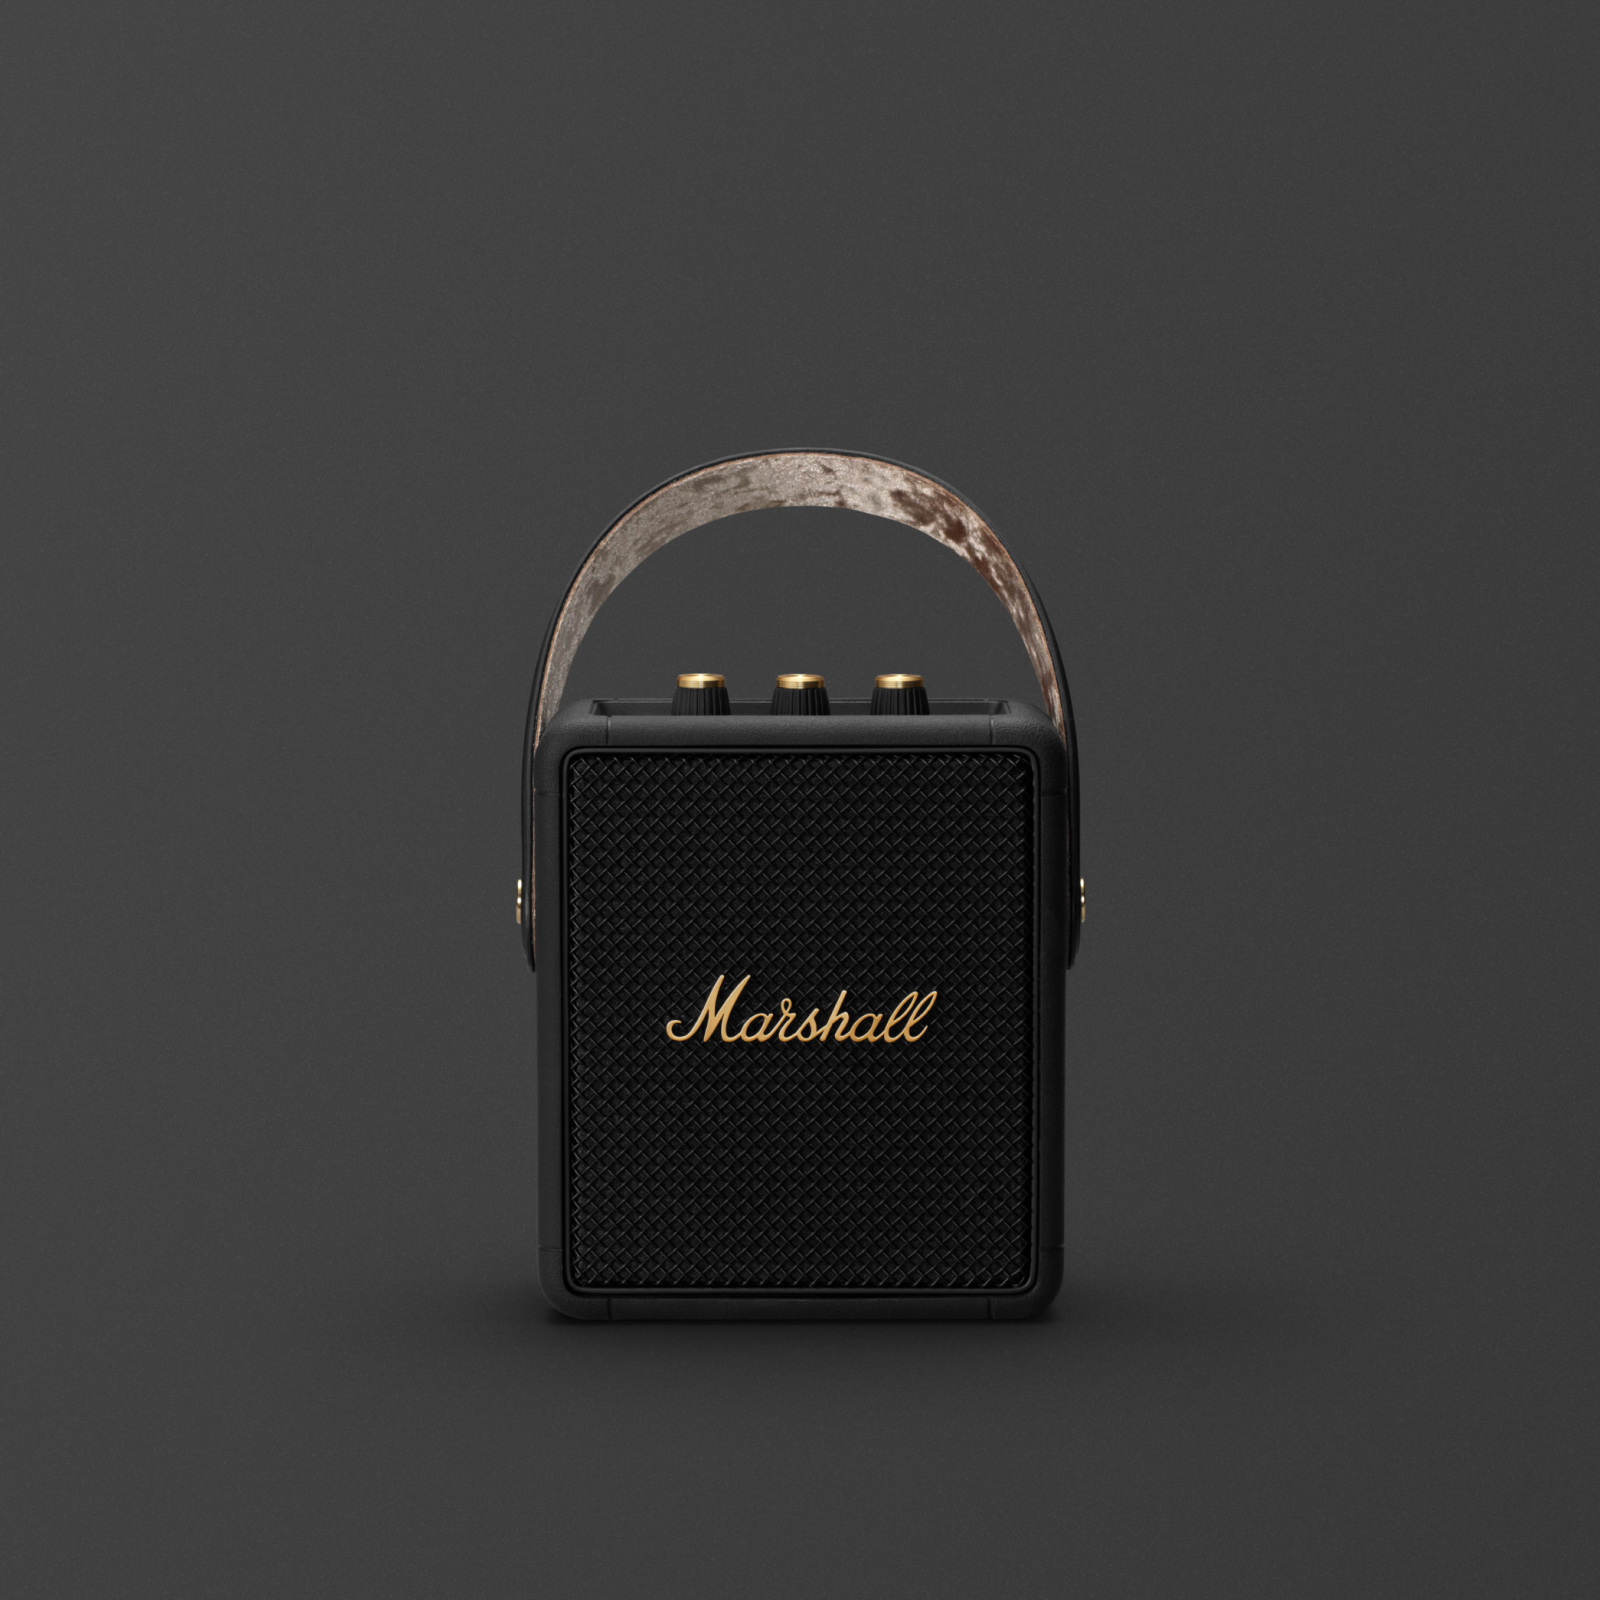 Marshall Stockwell II Black & Brass Speaker front facing